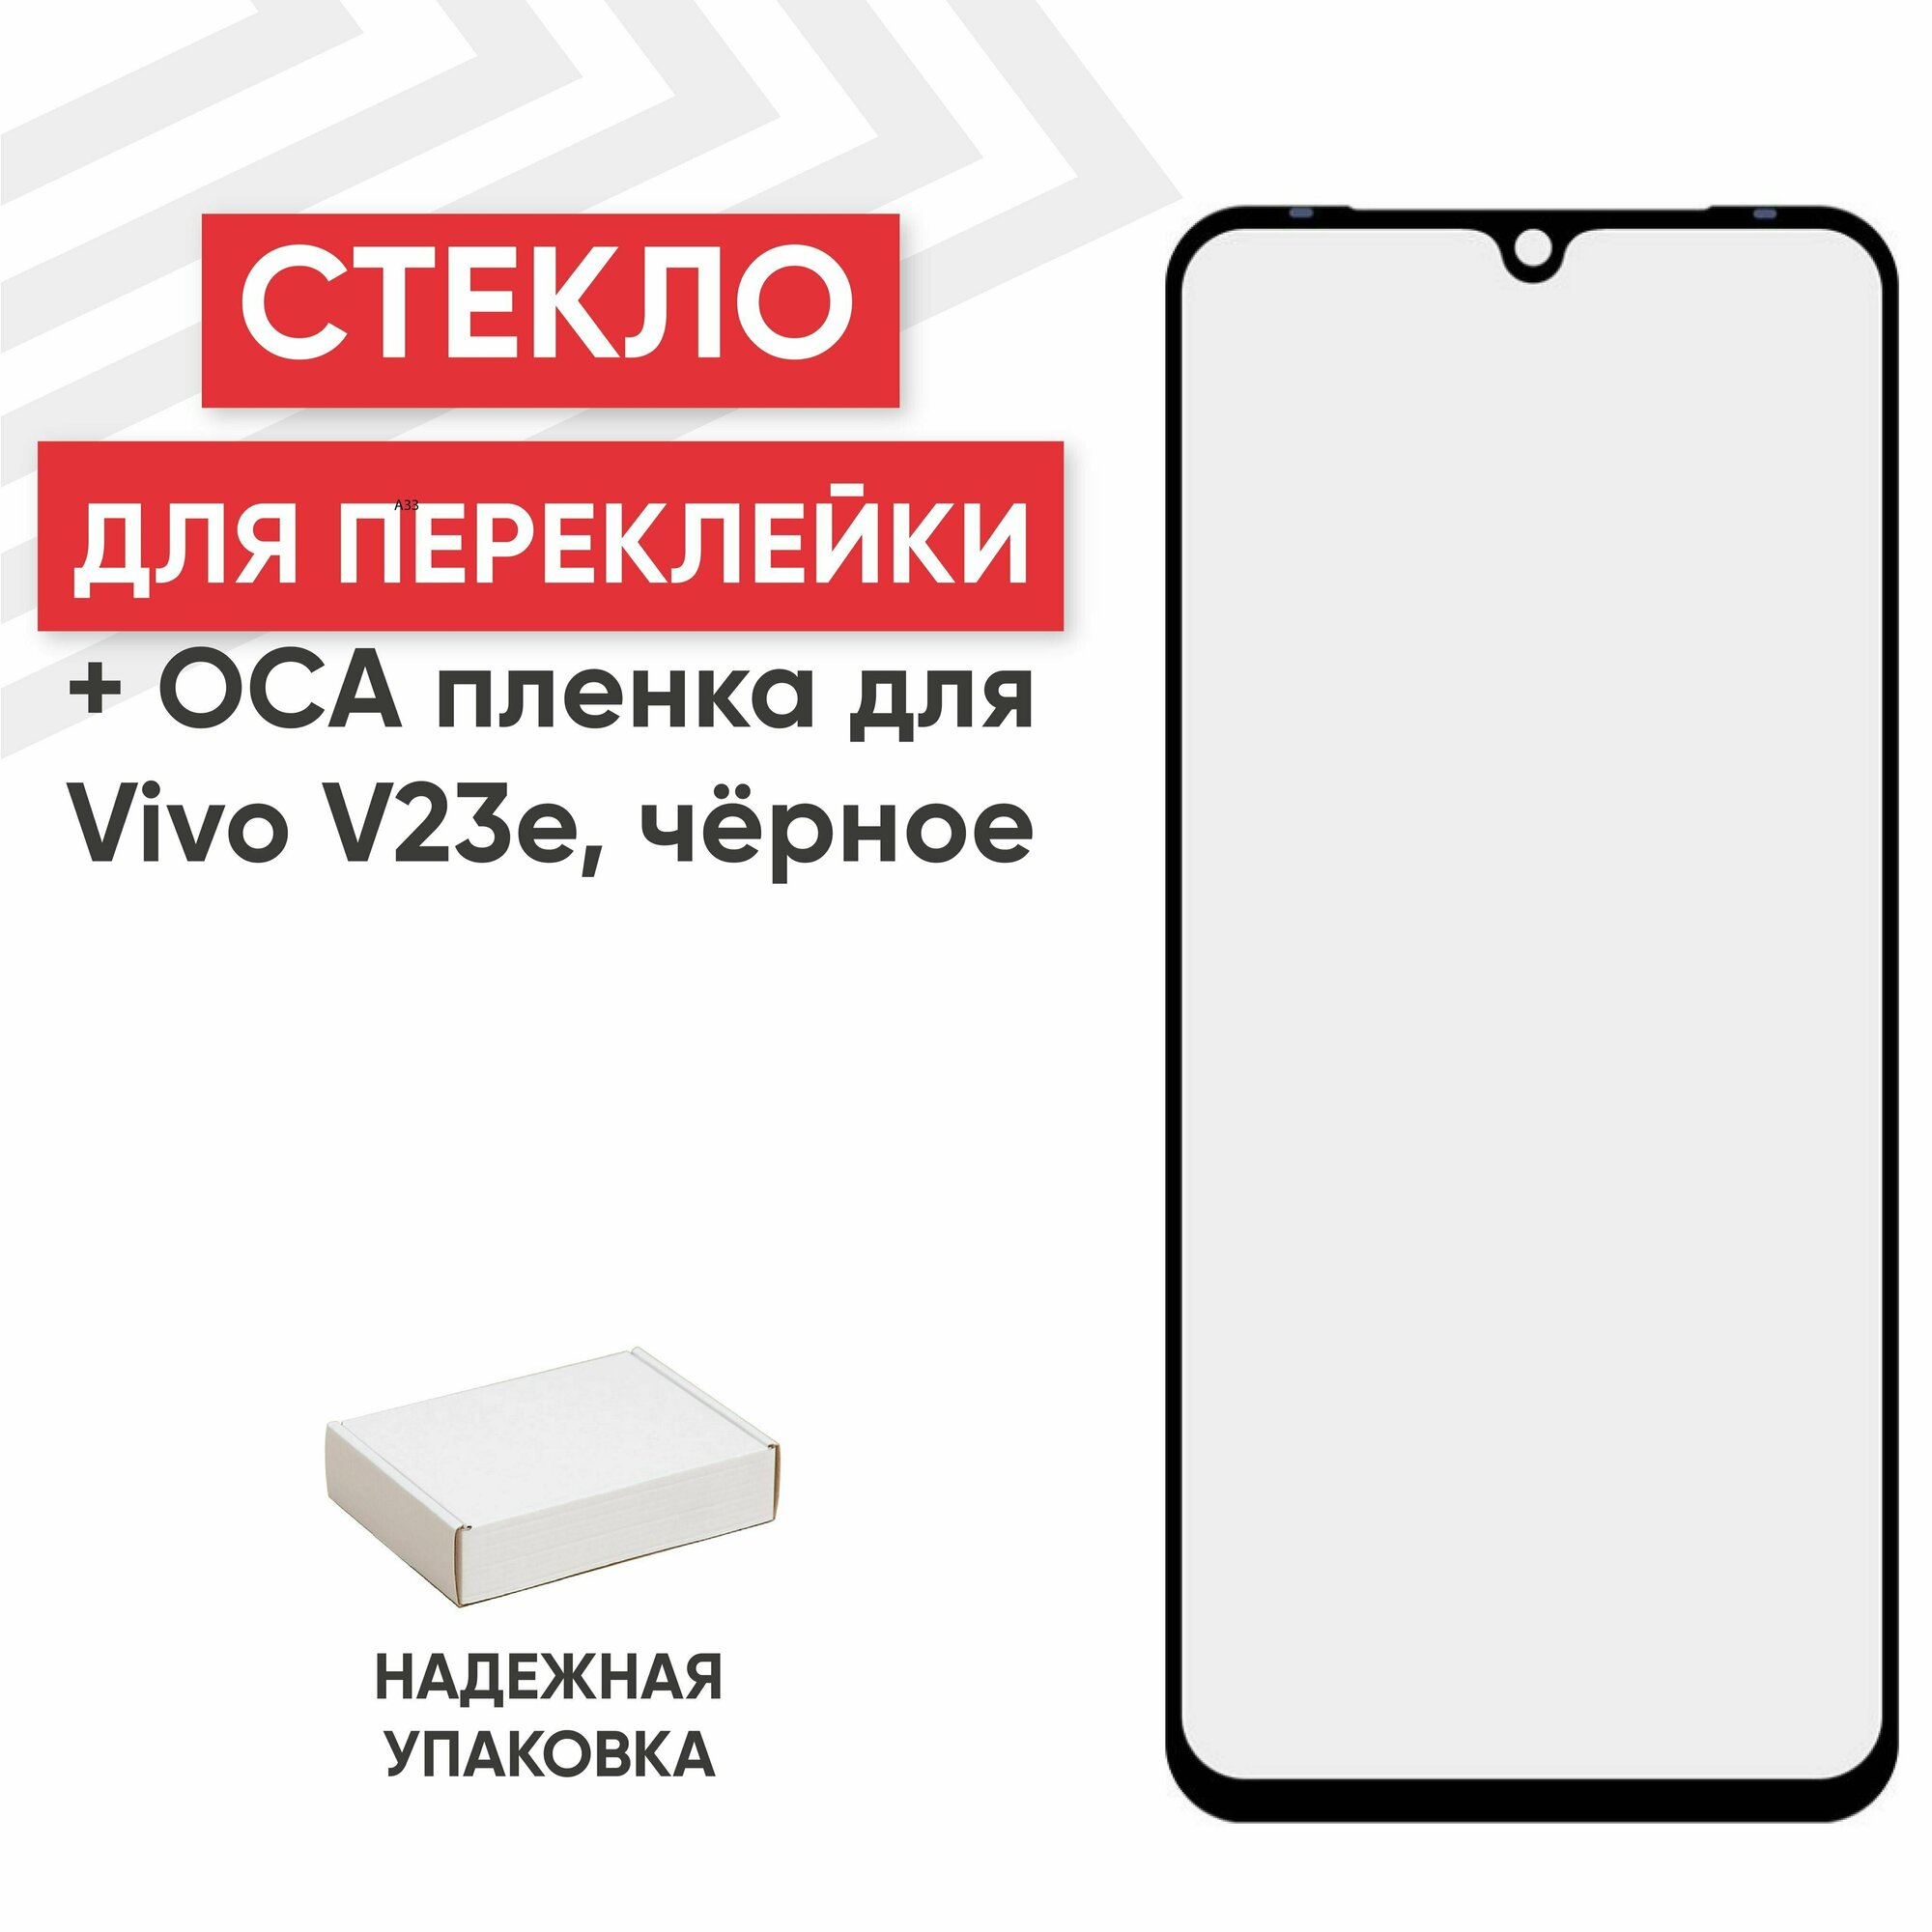 Стекло переклейки дисплея c OCA пленкой для мобильного телефона (смартфона) Vivo V23e, черное